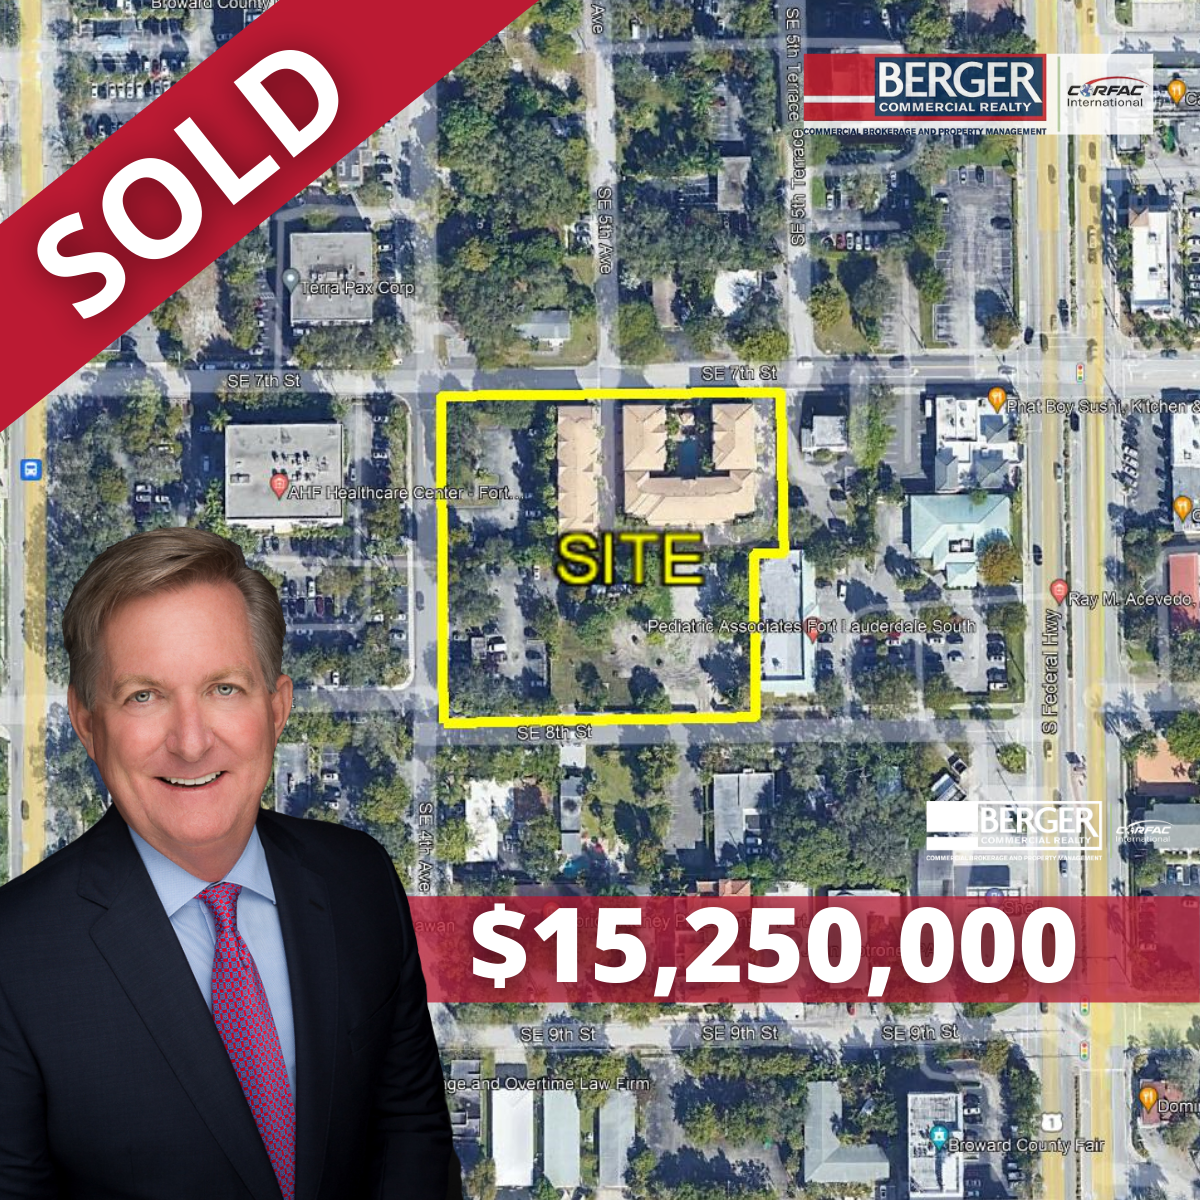 Berger Commercial Realty’s Steve Hyatt  Negotiates $15 Million Sale Of Fort Lauderdale Development Site